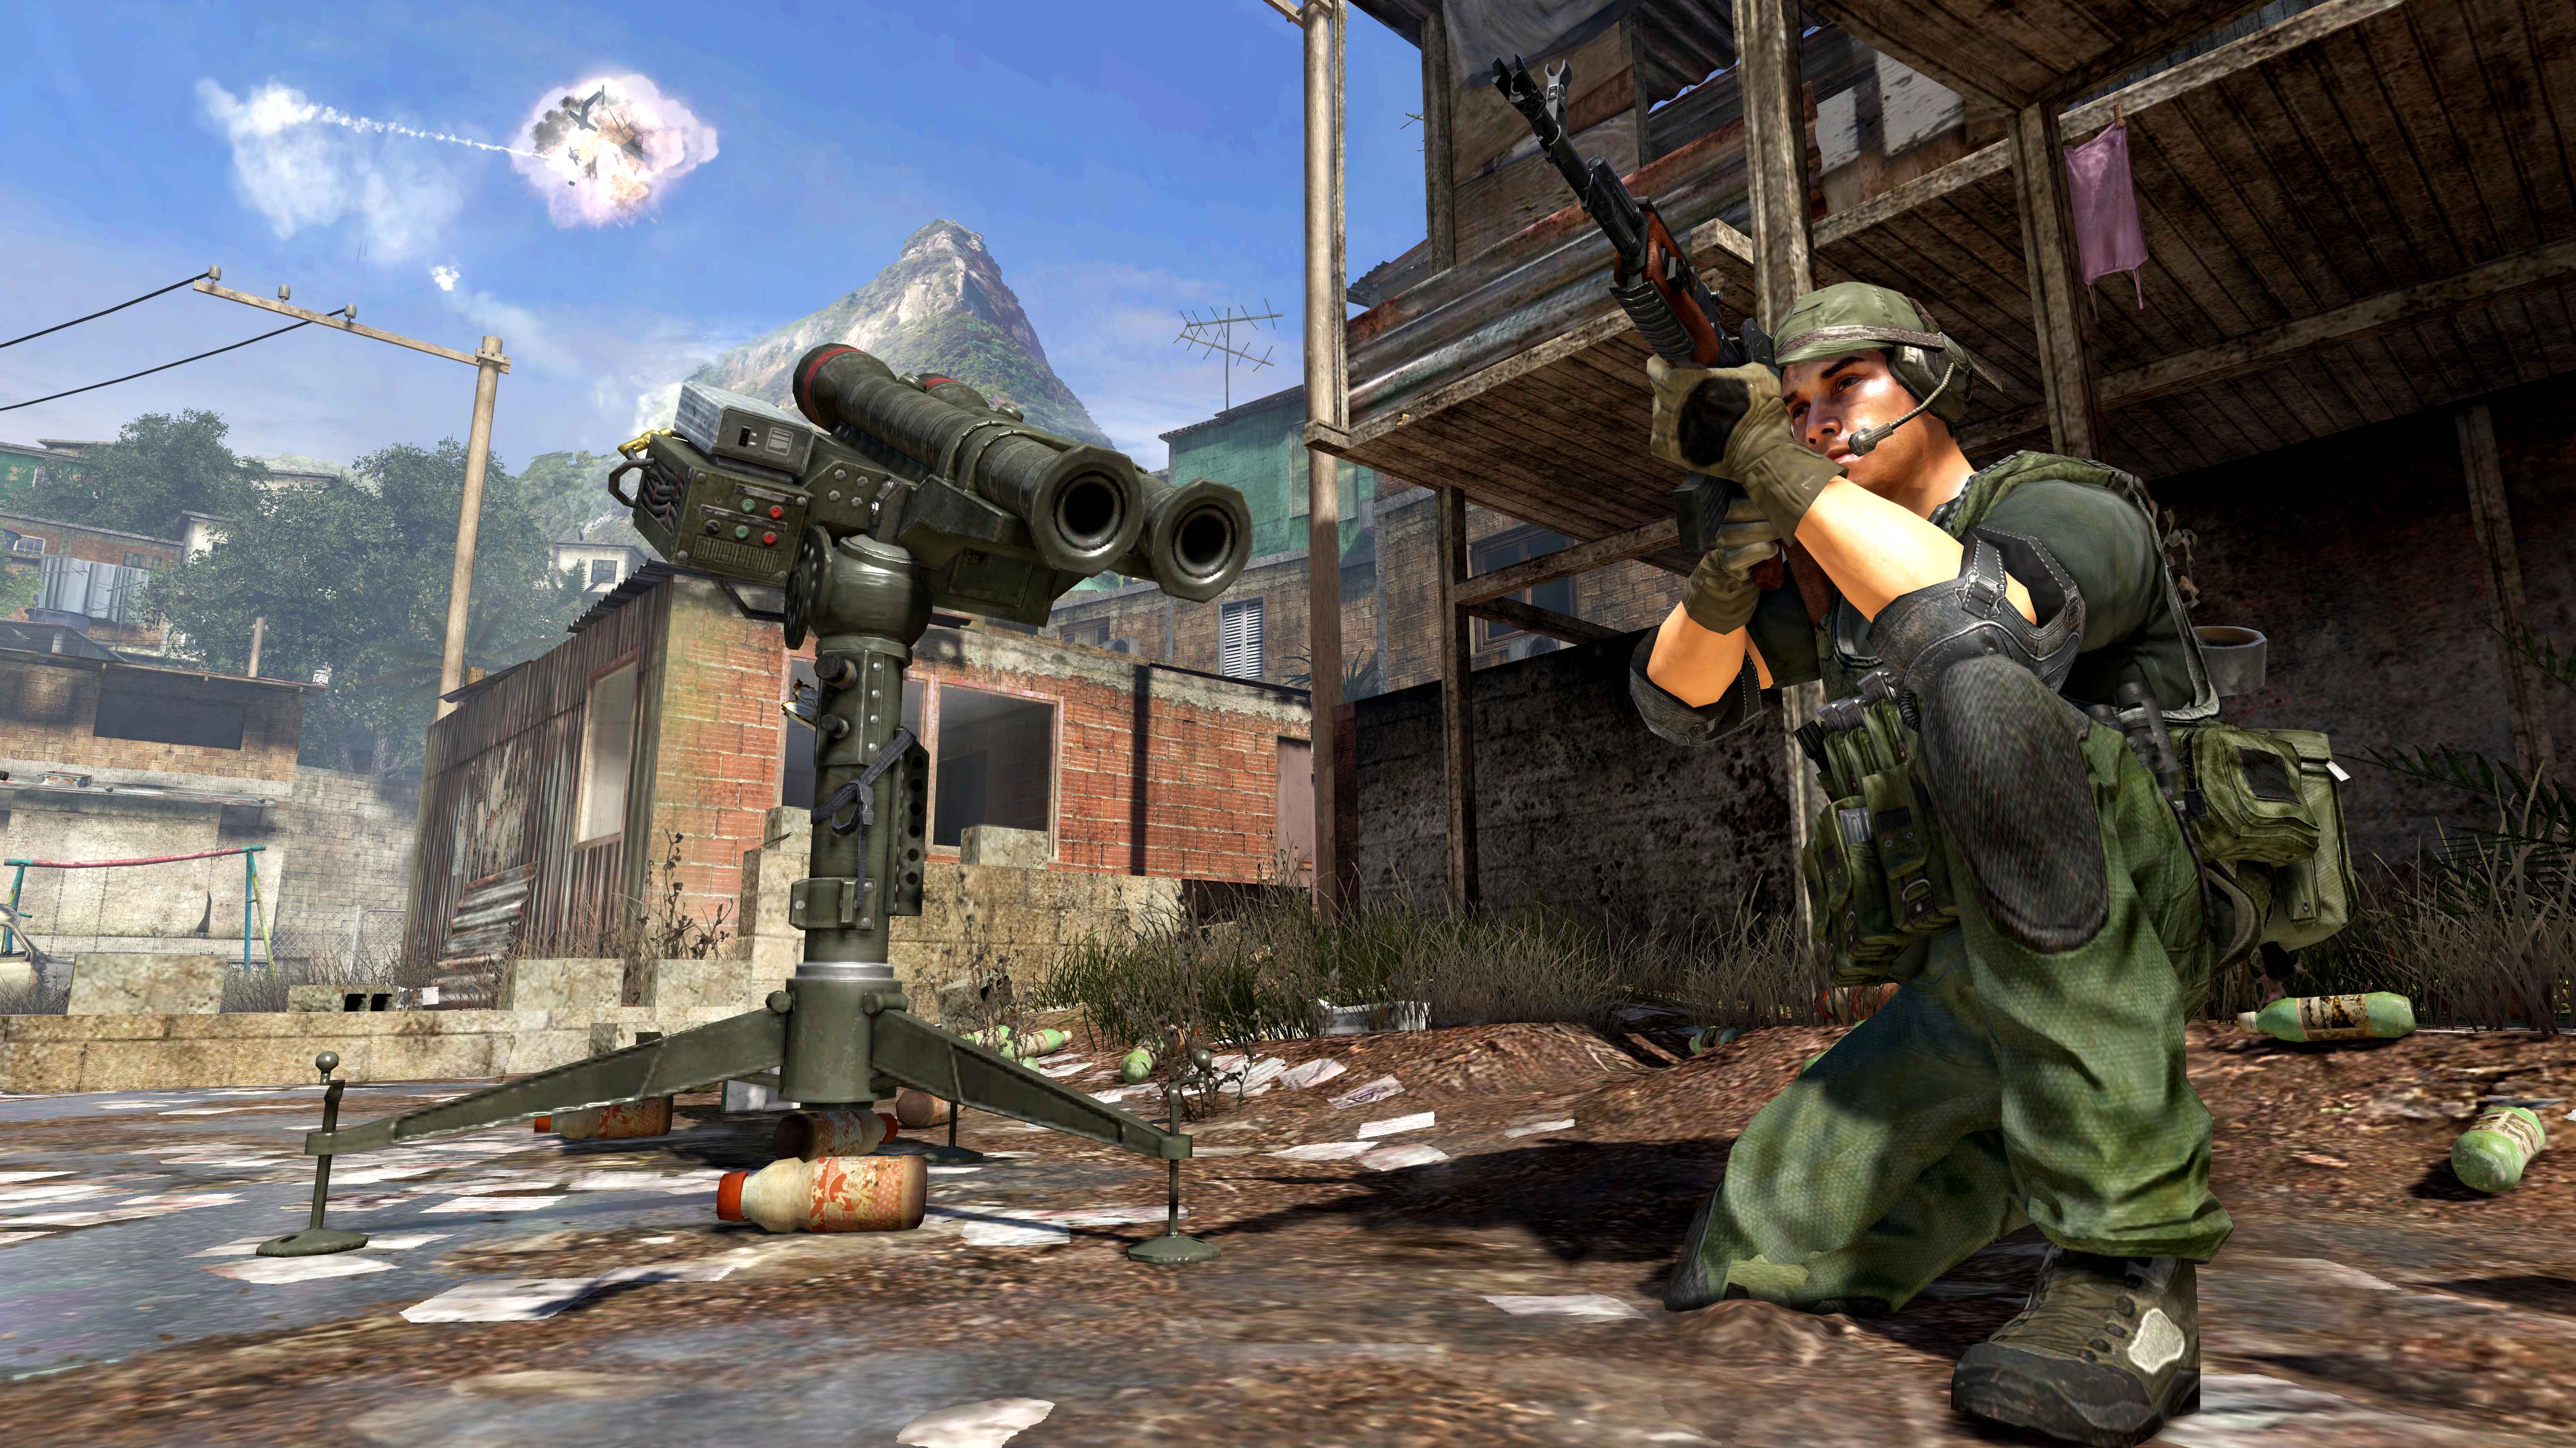 Bị chê chất lượng kém, Call of Duty Online thay đổi nhà phát triển 2